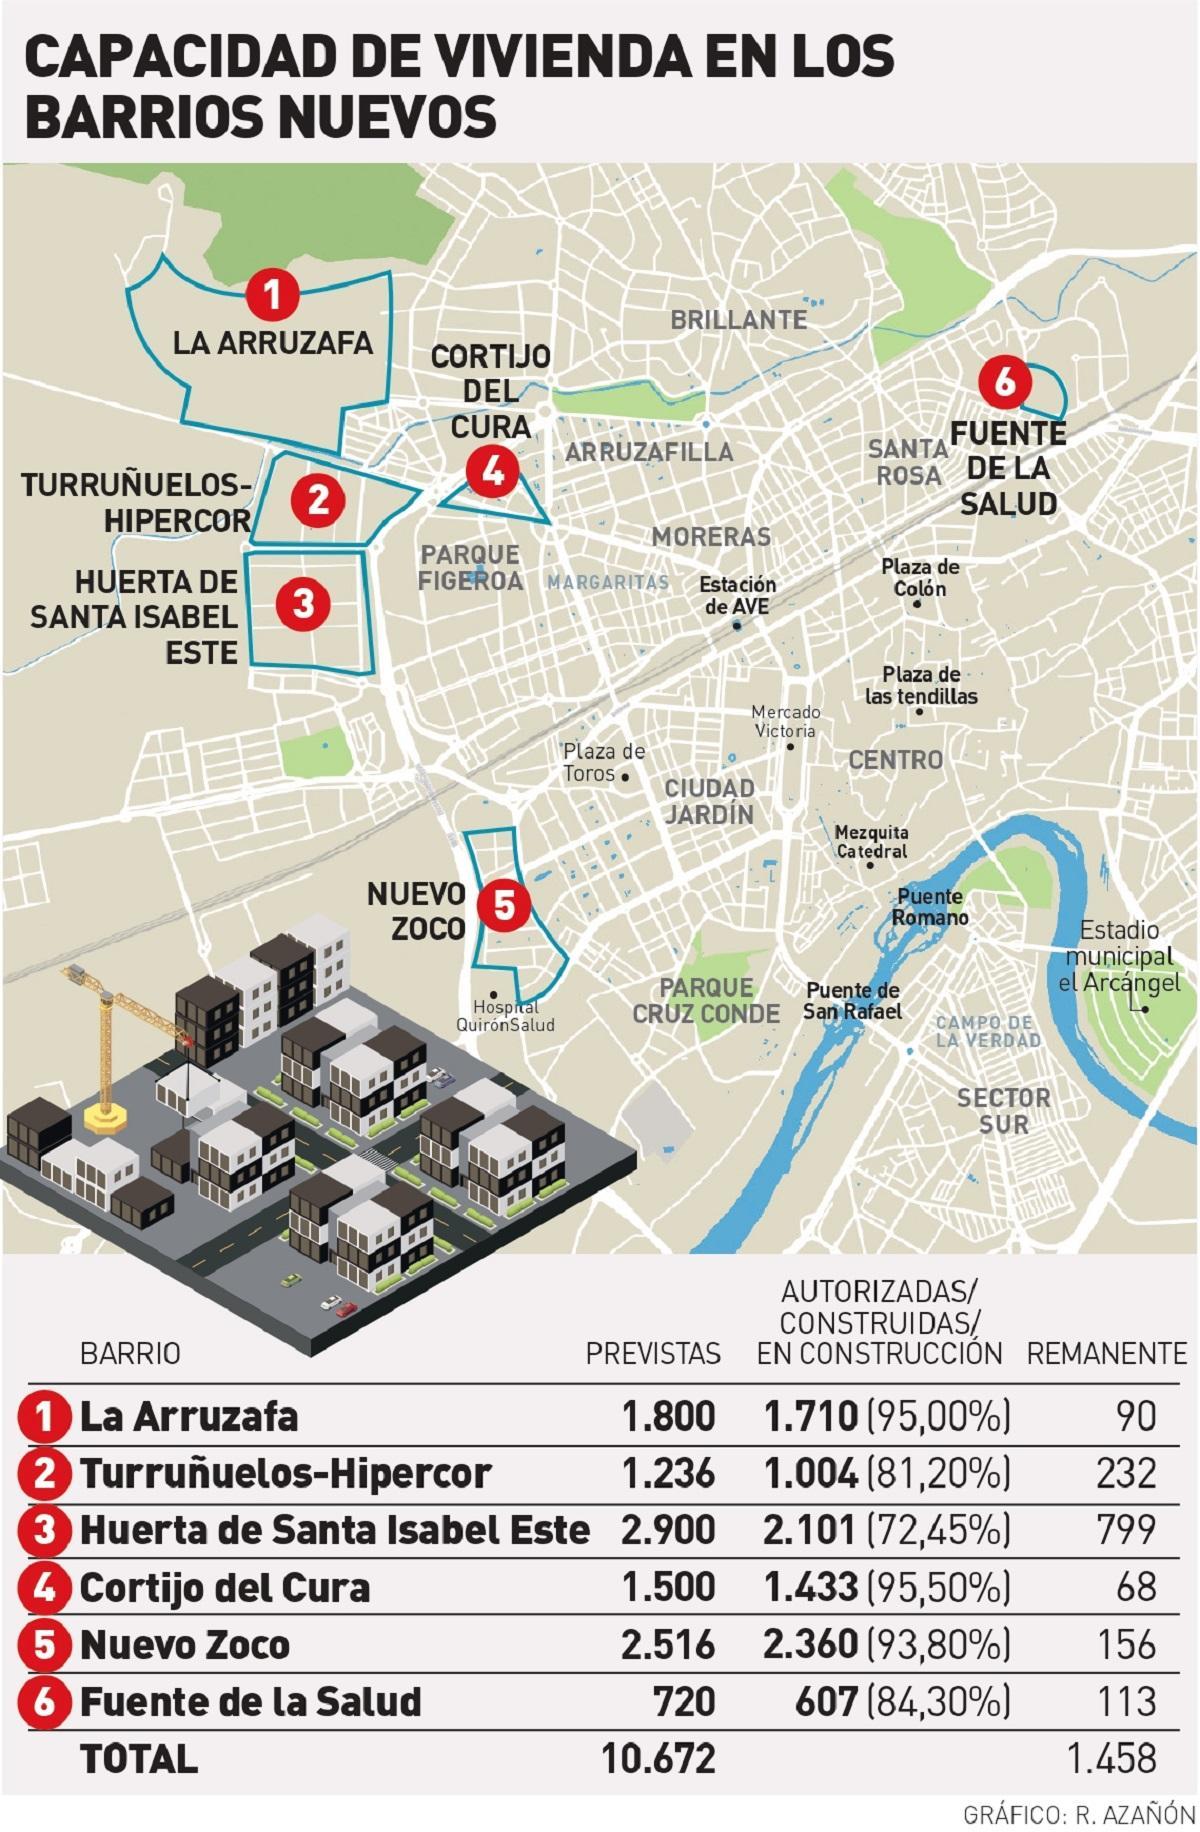 Capacidad de vivienda en los barrios nuevos de Córdoba.